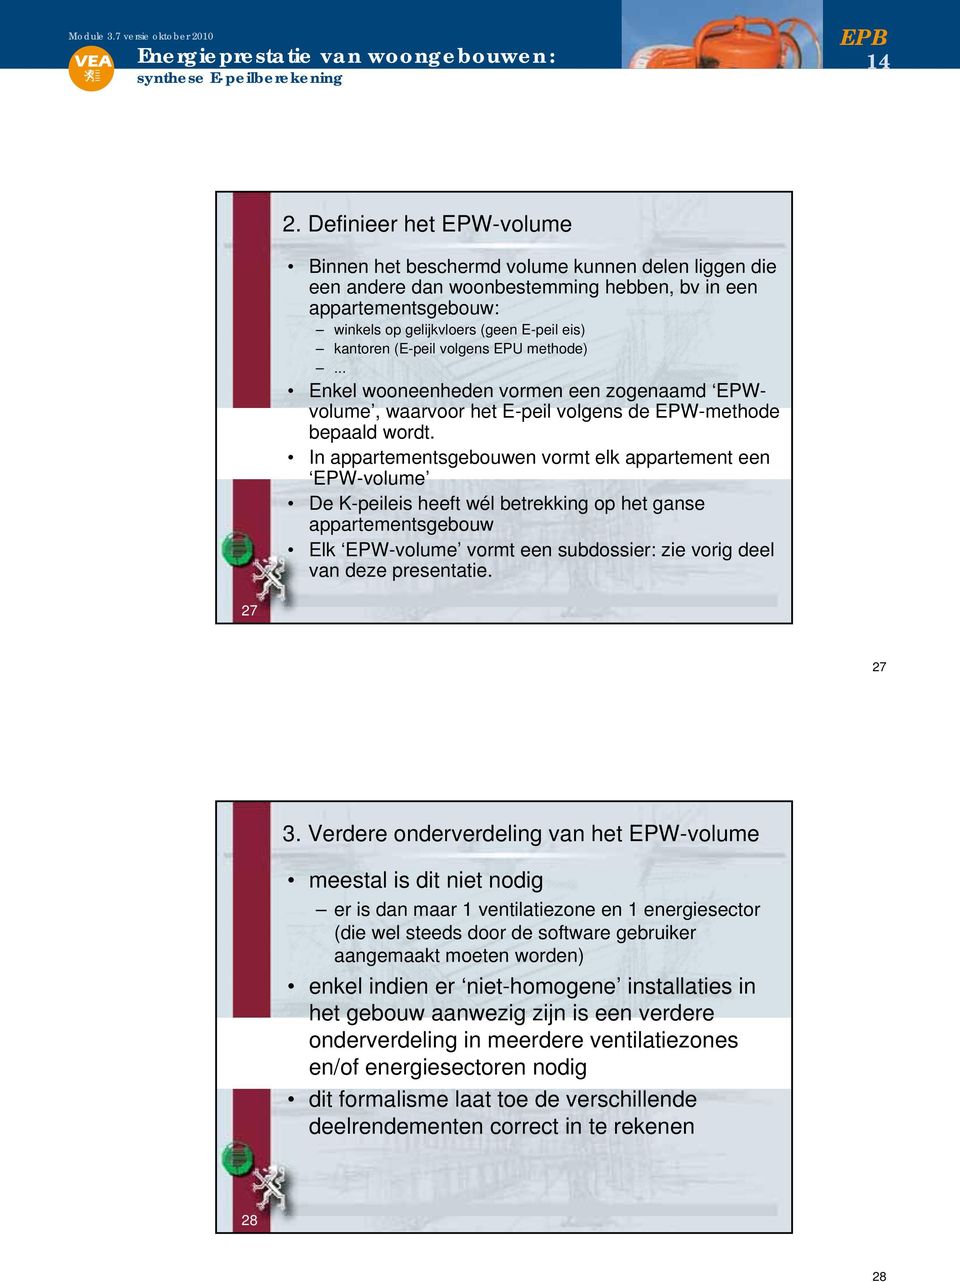 (E-peil volgens EPU methode)... Enkel wooneenheden vormen een zogenaamd EPWvolume, waarvoor het E-peil volgens de EPW-methode bepaald wordt.